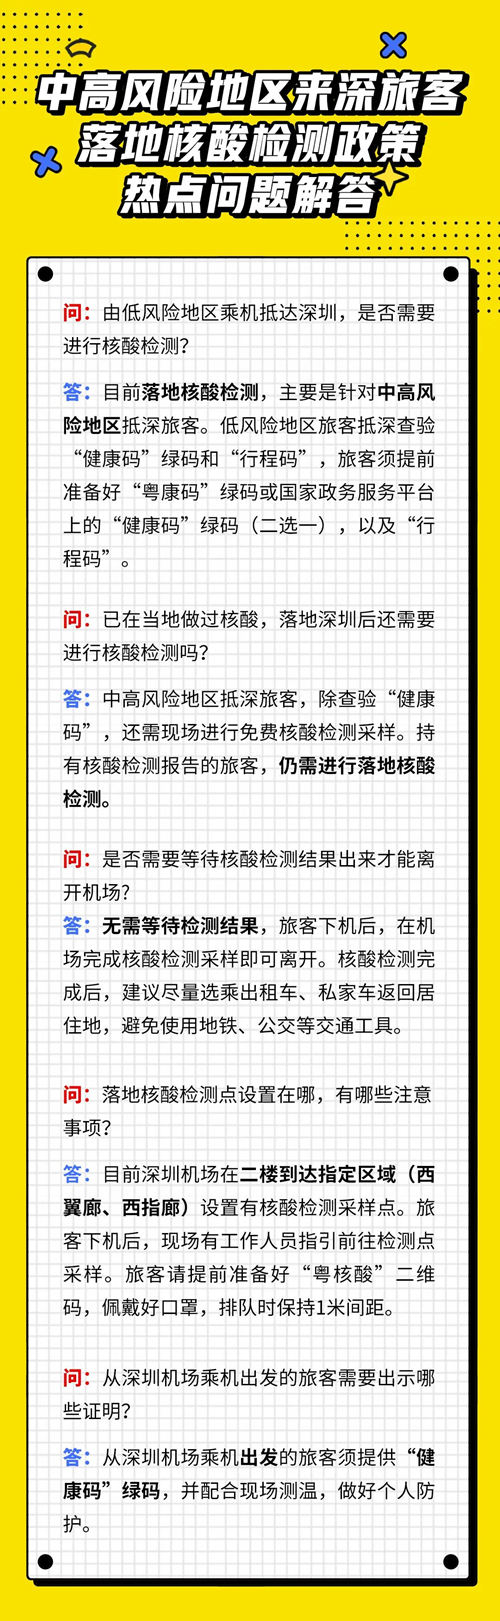 深圳宝安机场中高风险地区来深旅客落地核酸检测政策解答